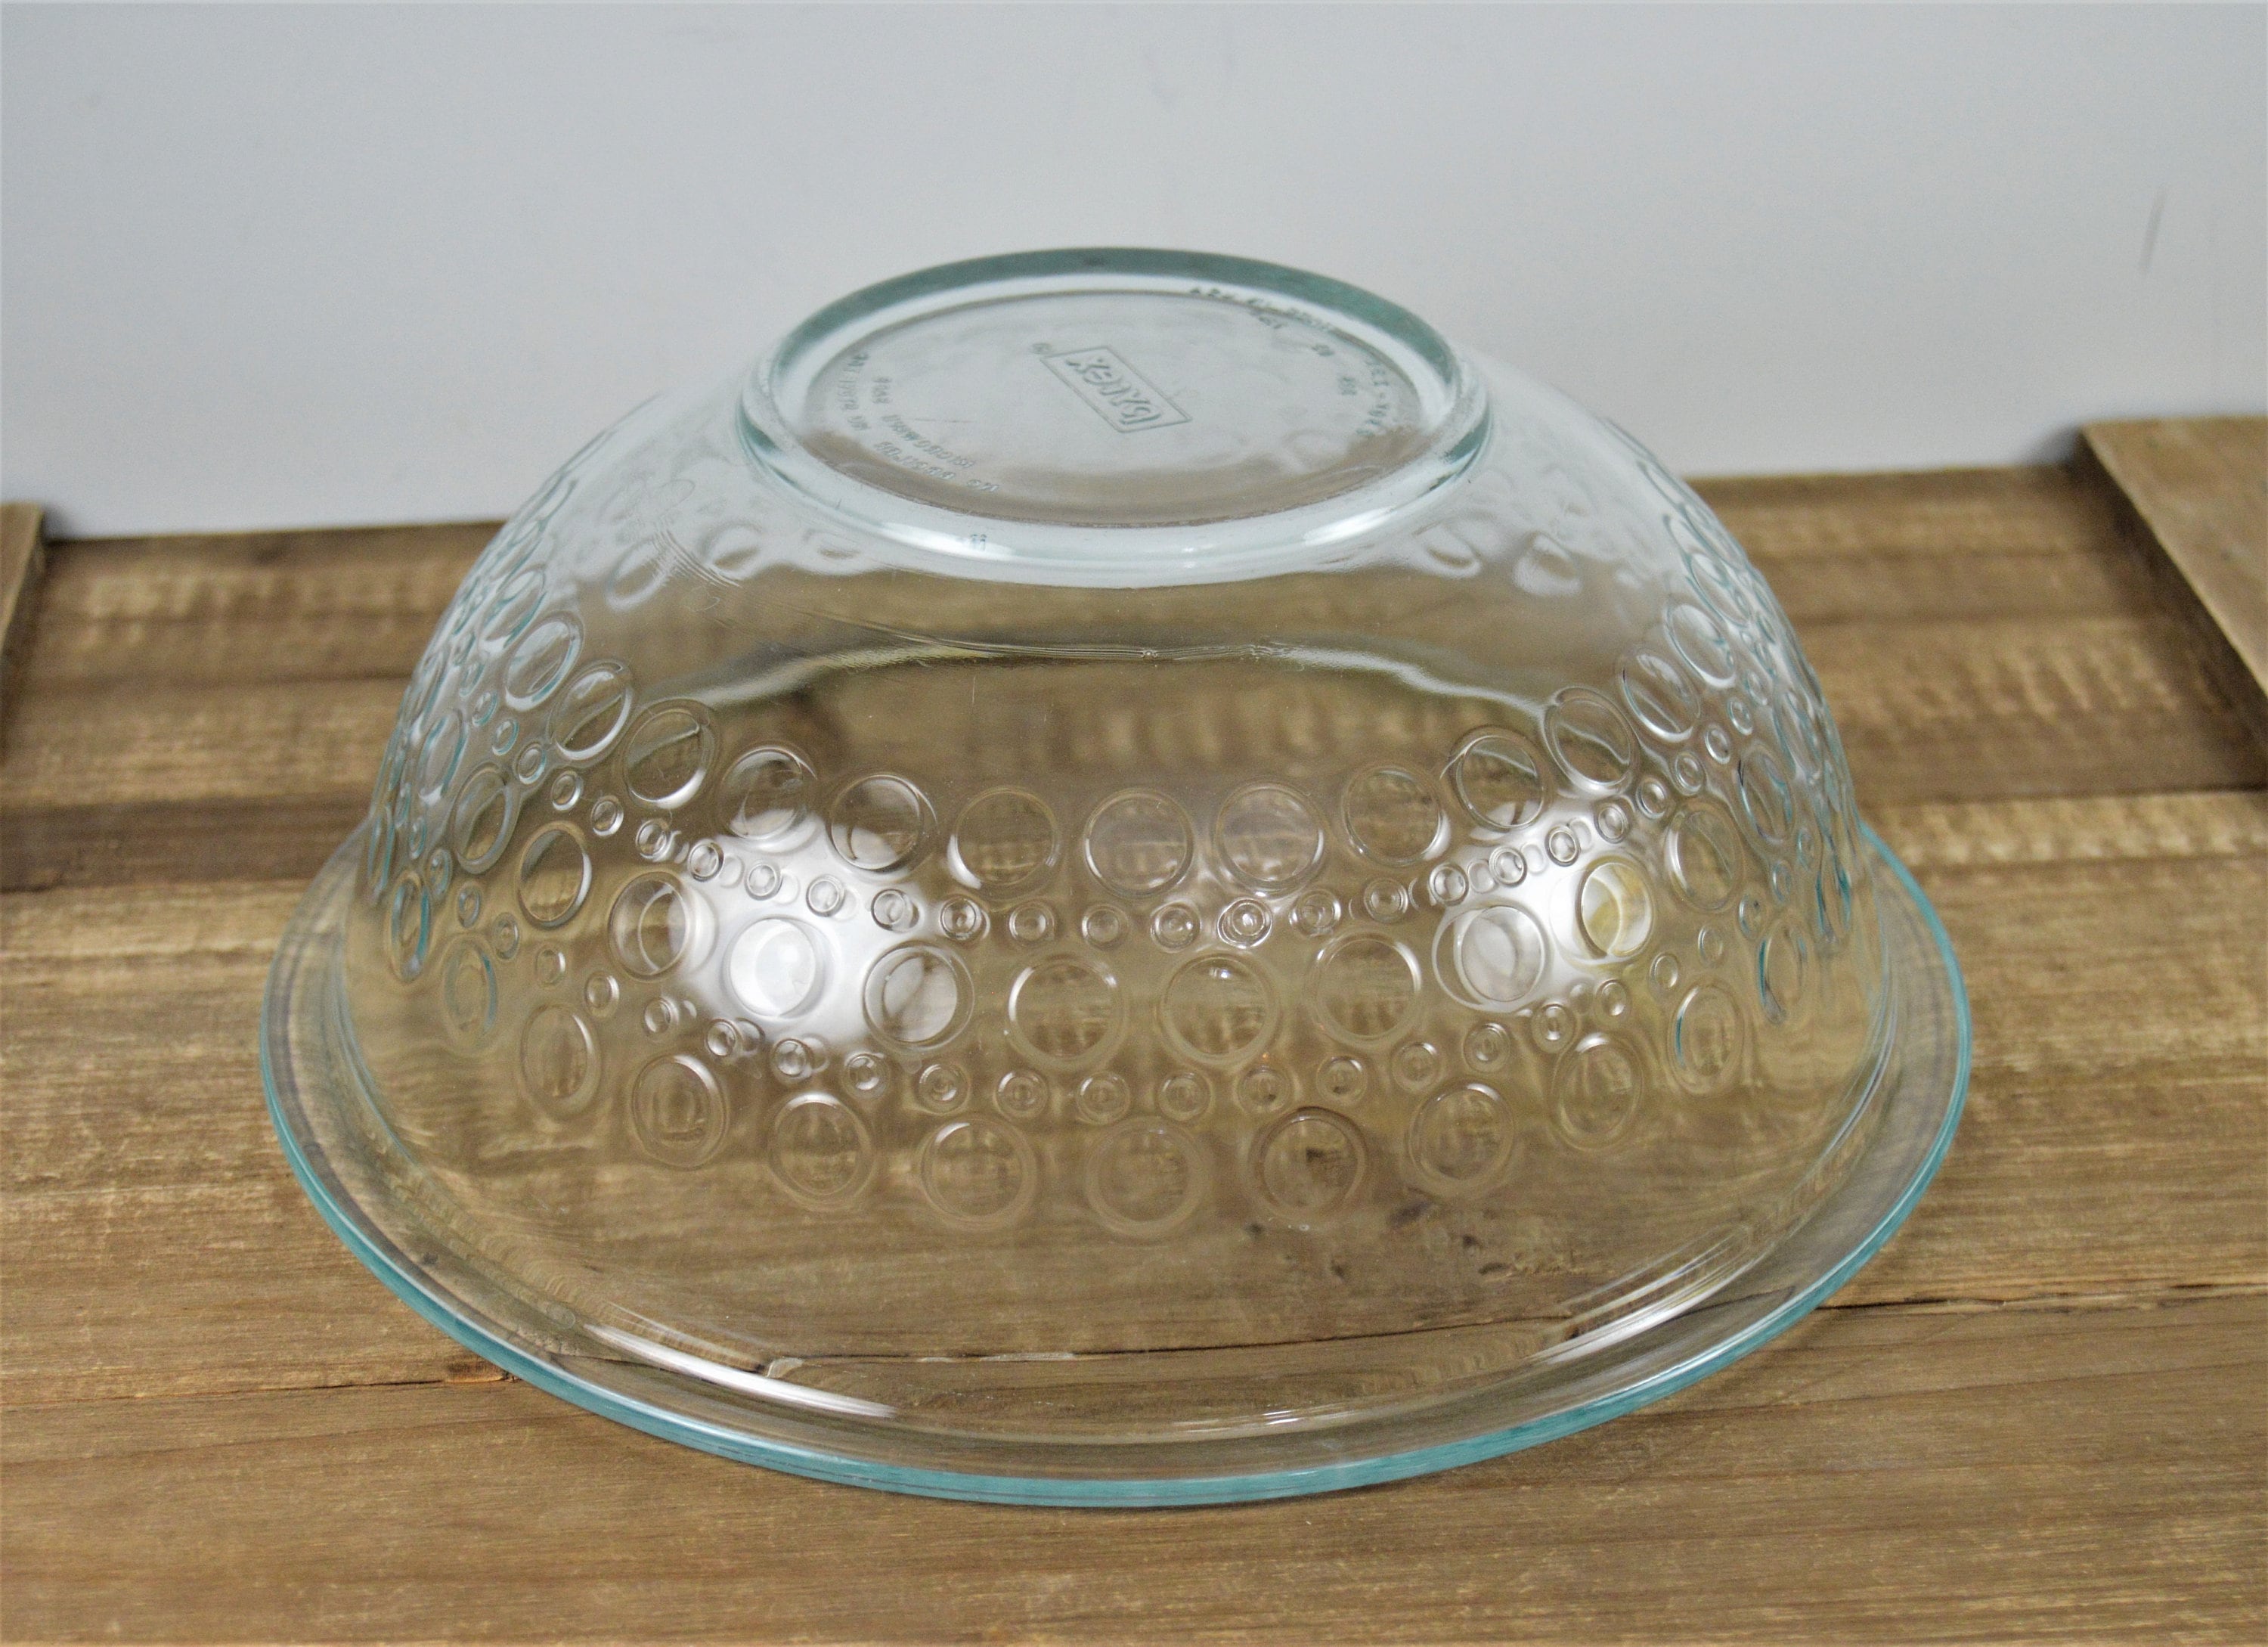 Lot of 3 Pyrex Clear Glass Storage Bowls with Lids 1.75 QT & 1 QT